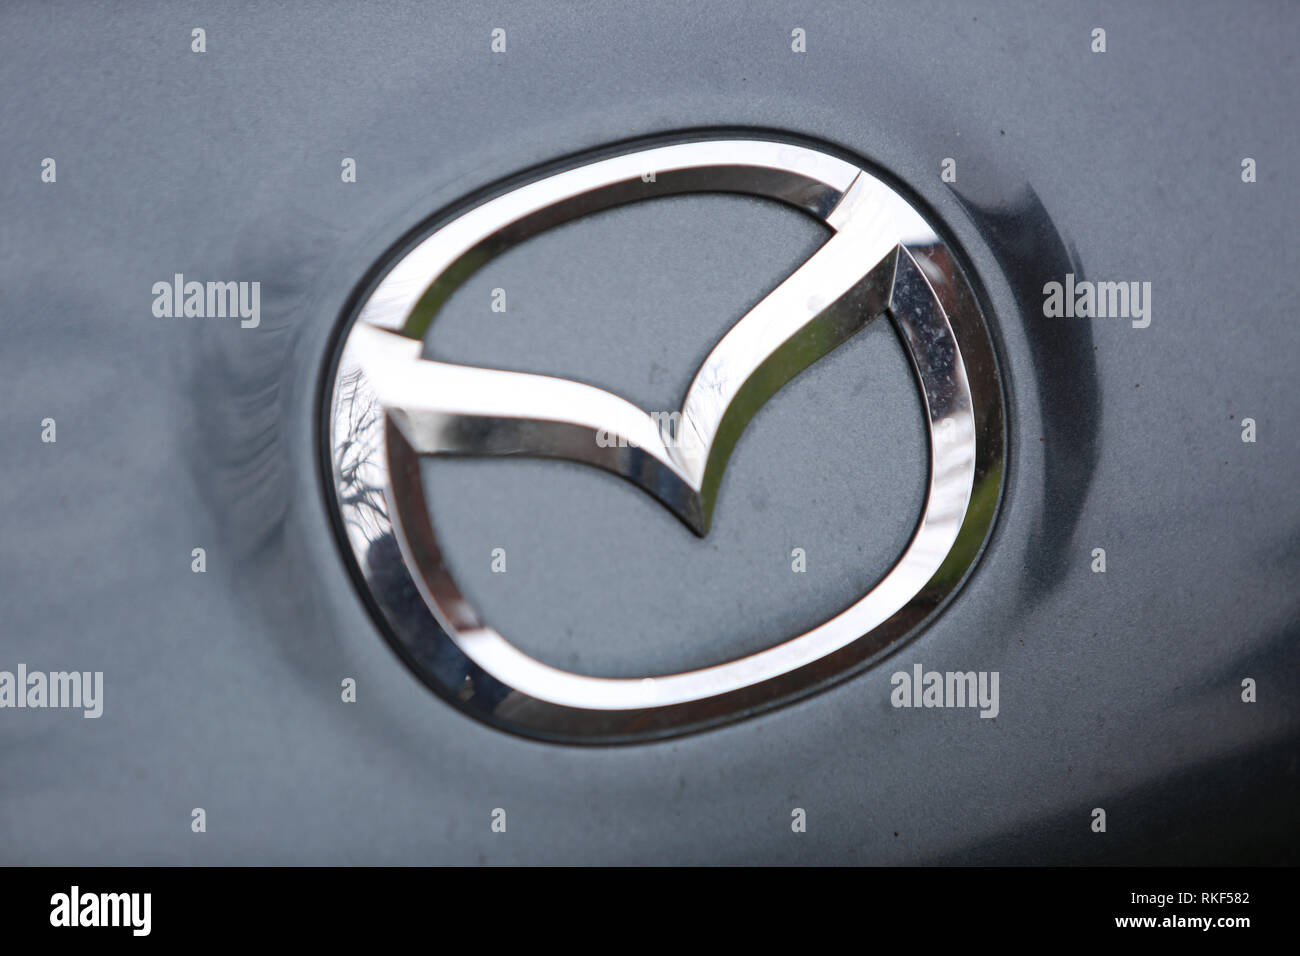 Le symbole et le logo voiture Mazda, au Royaume-Uni. Banque D'Images